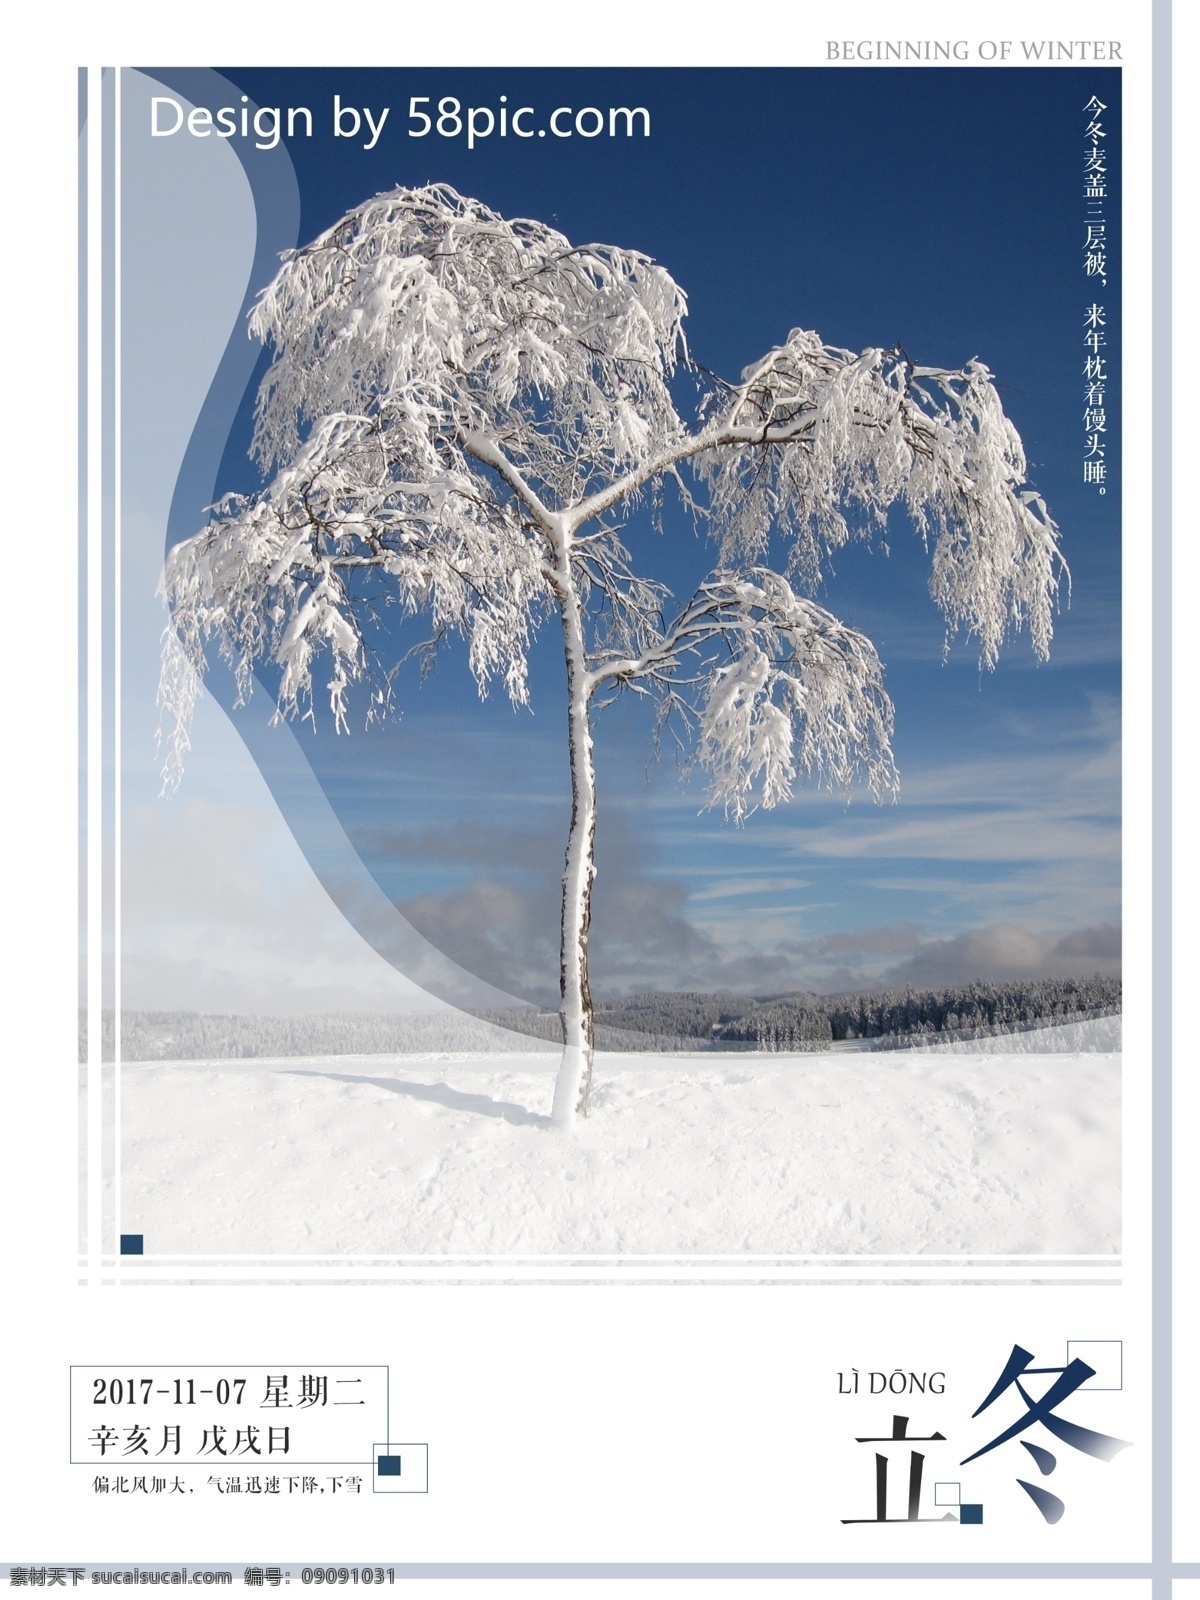 二十四节气 立冬 微 信 宣传 配 图 海报 冬季 树 雪 简约 微信 配图